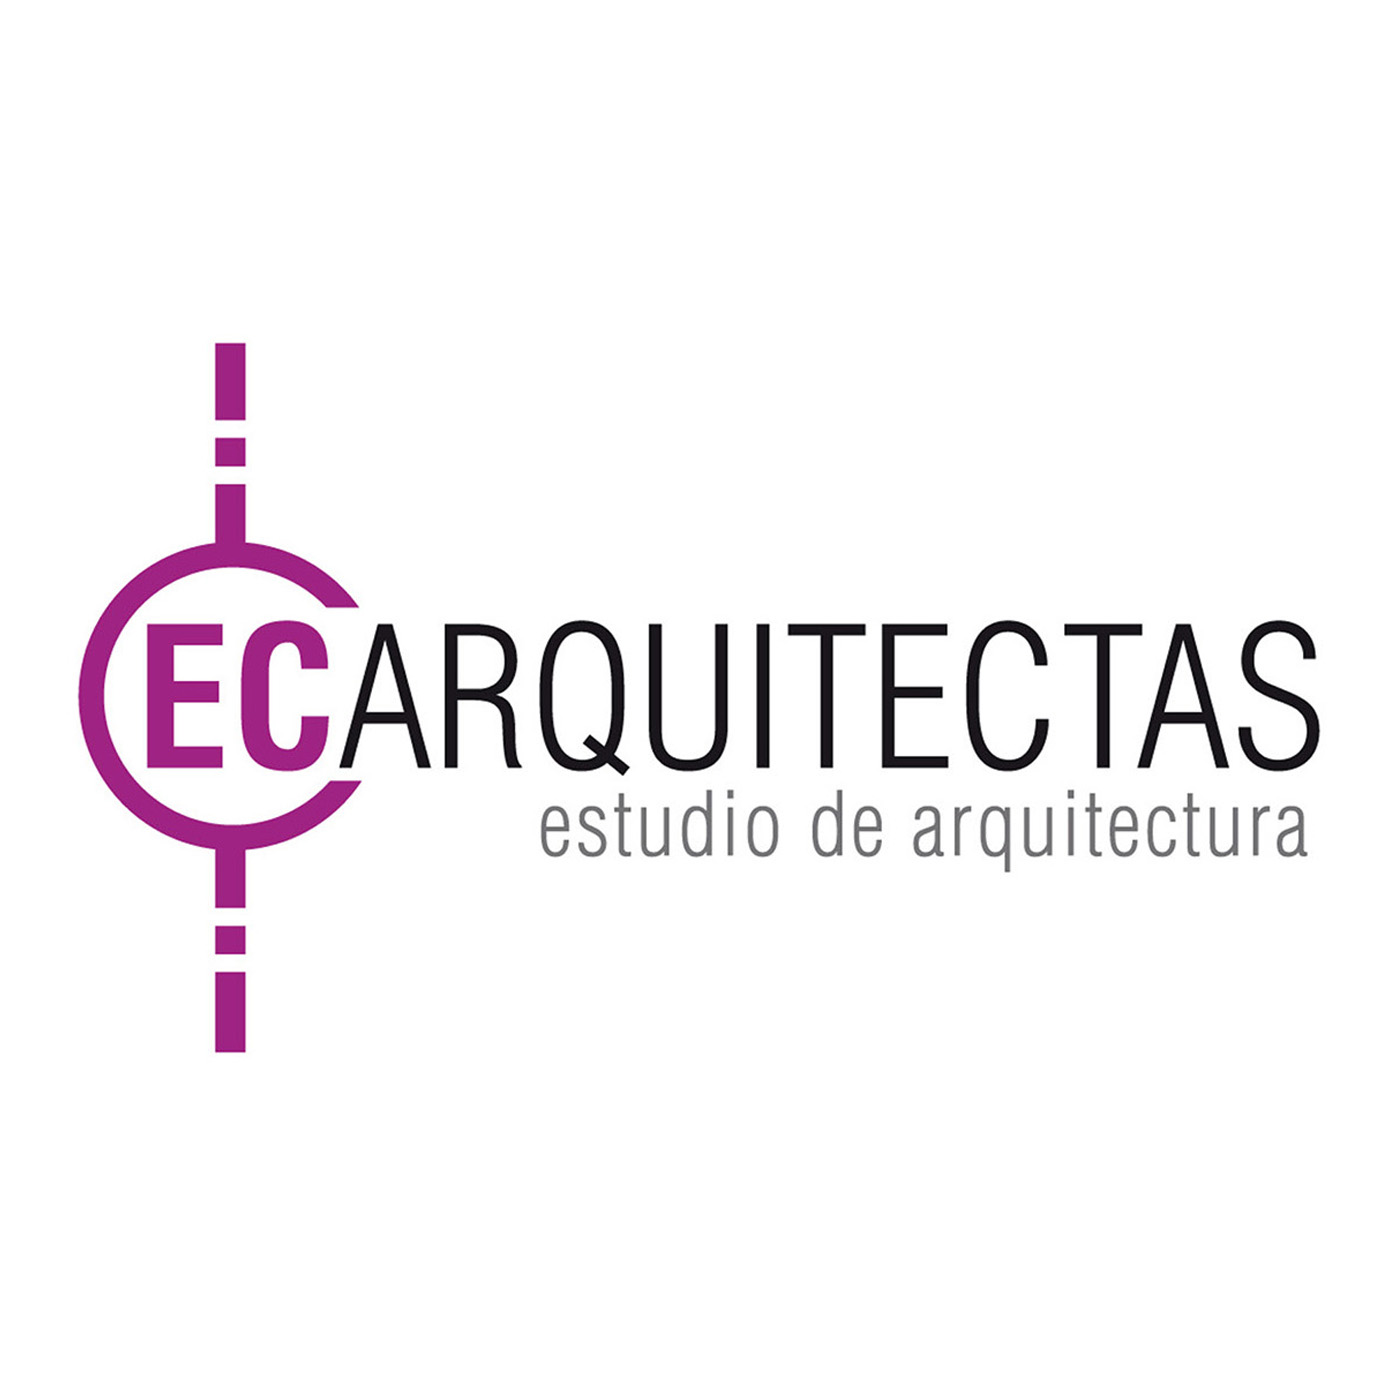 EC Arquitectas